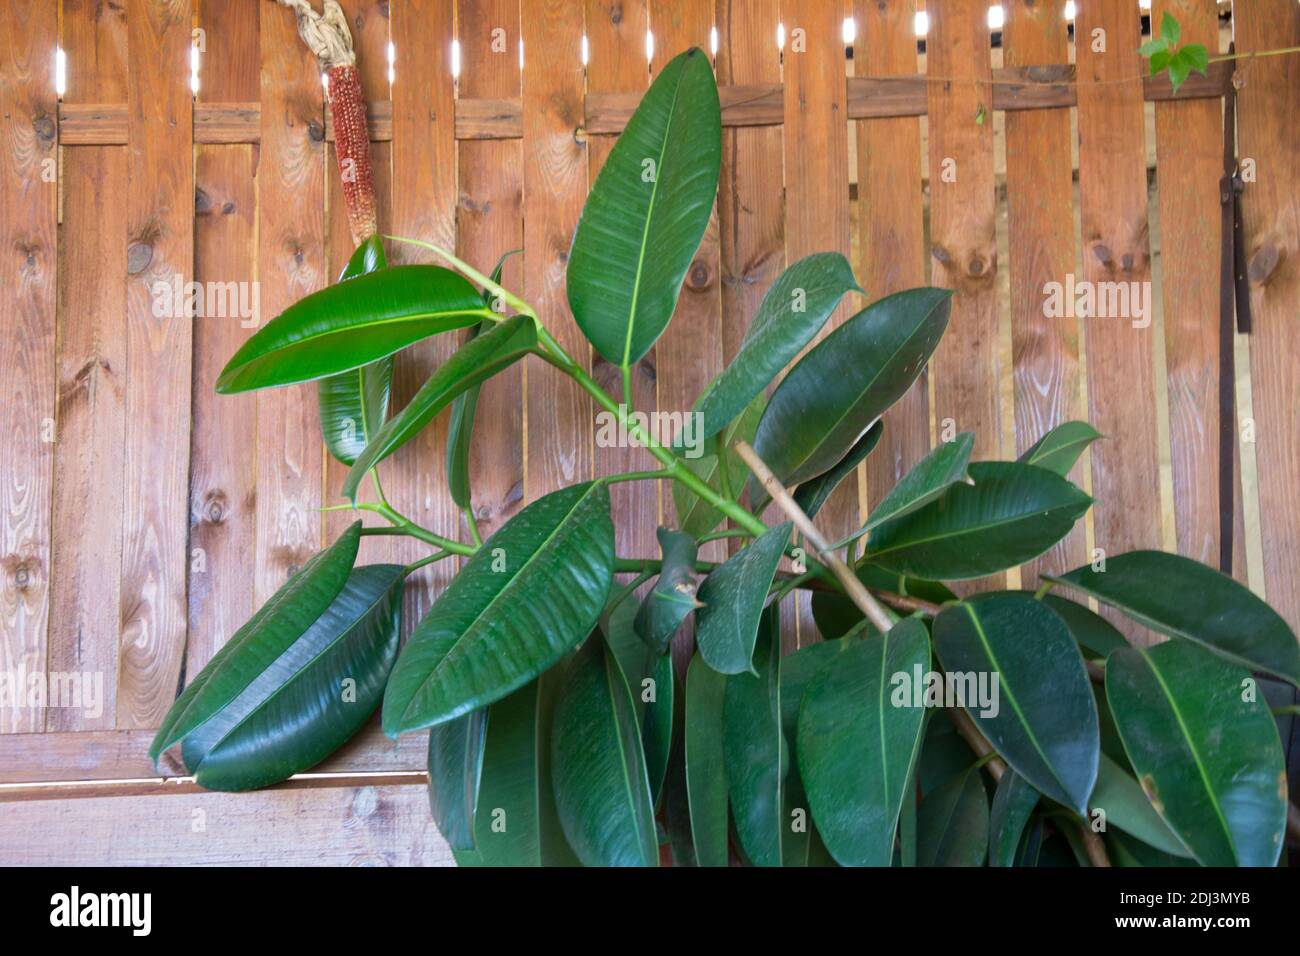 Primo piano di foglie verdi di piante di fichus, su fondo di parete di legno. Impianto Ficus elastica. Piante da interno in una pentola, ficus benjamina, fico, ru indiano Foto Stock